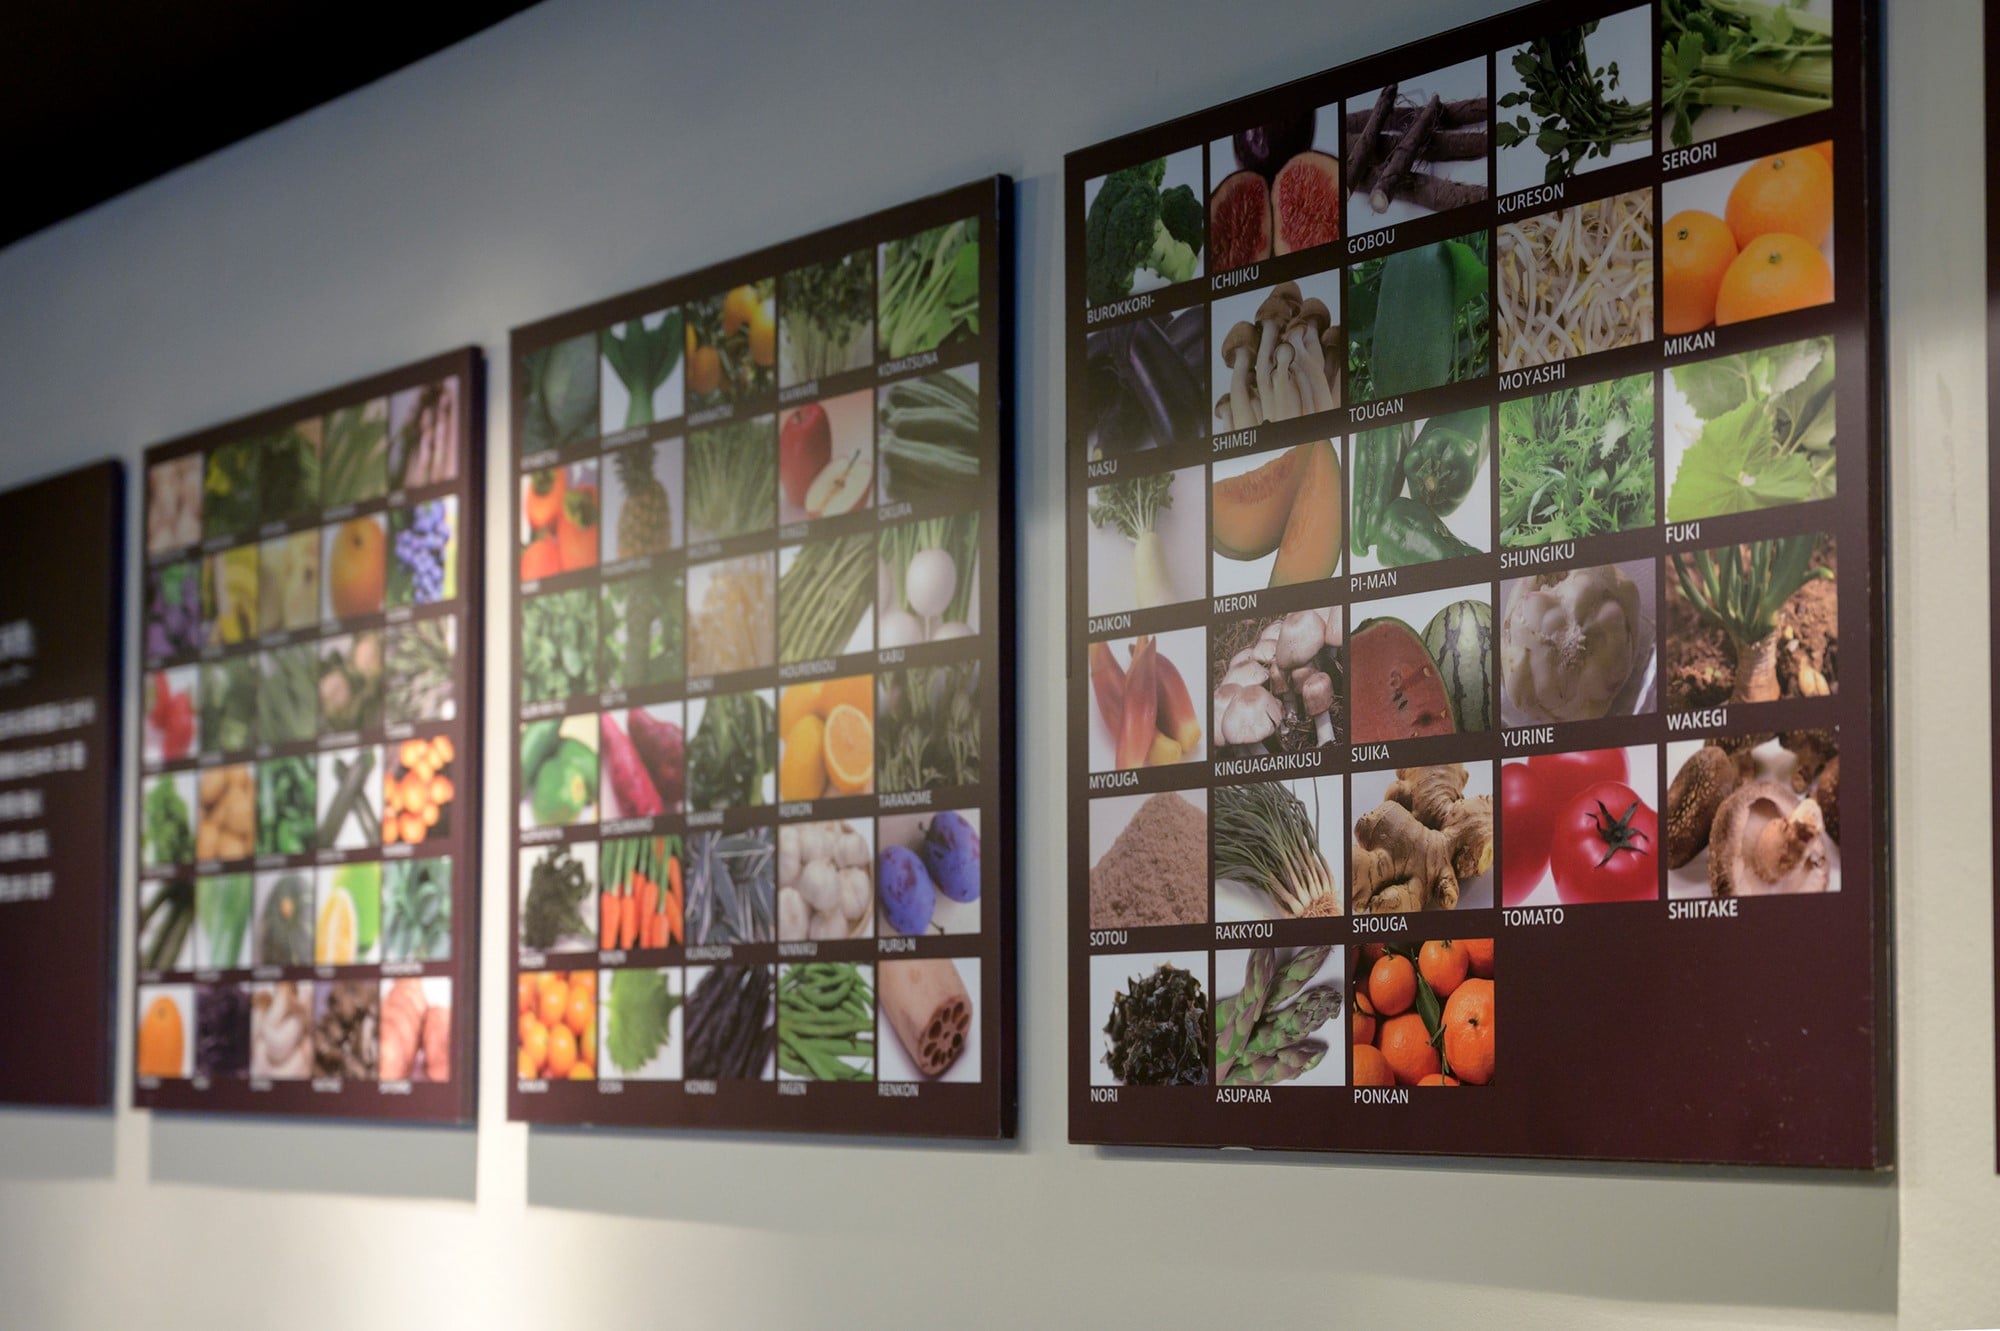 壁面にはさまざまなメニューに使われている70種類以上の野菜や果物をパネルで展示。